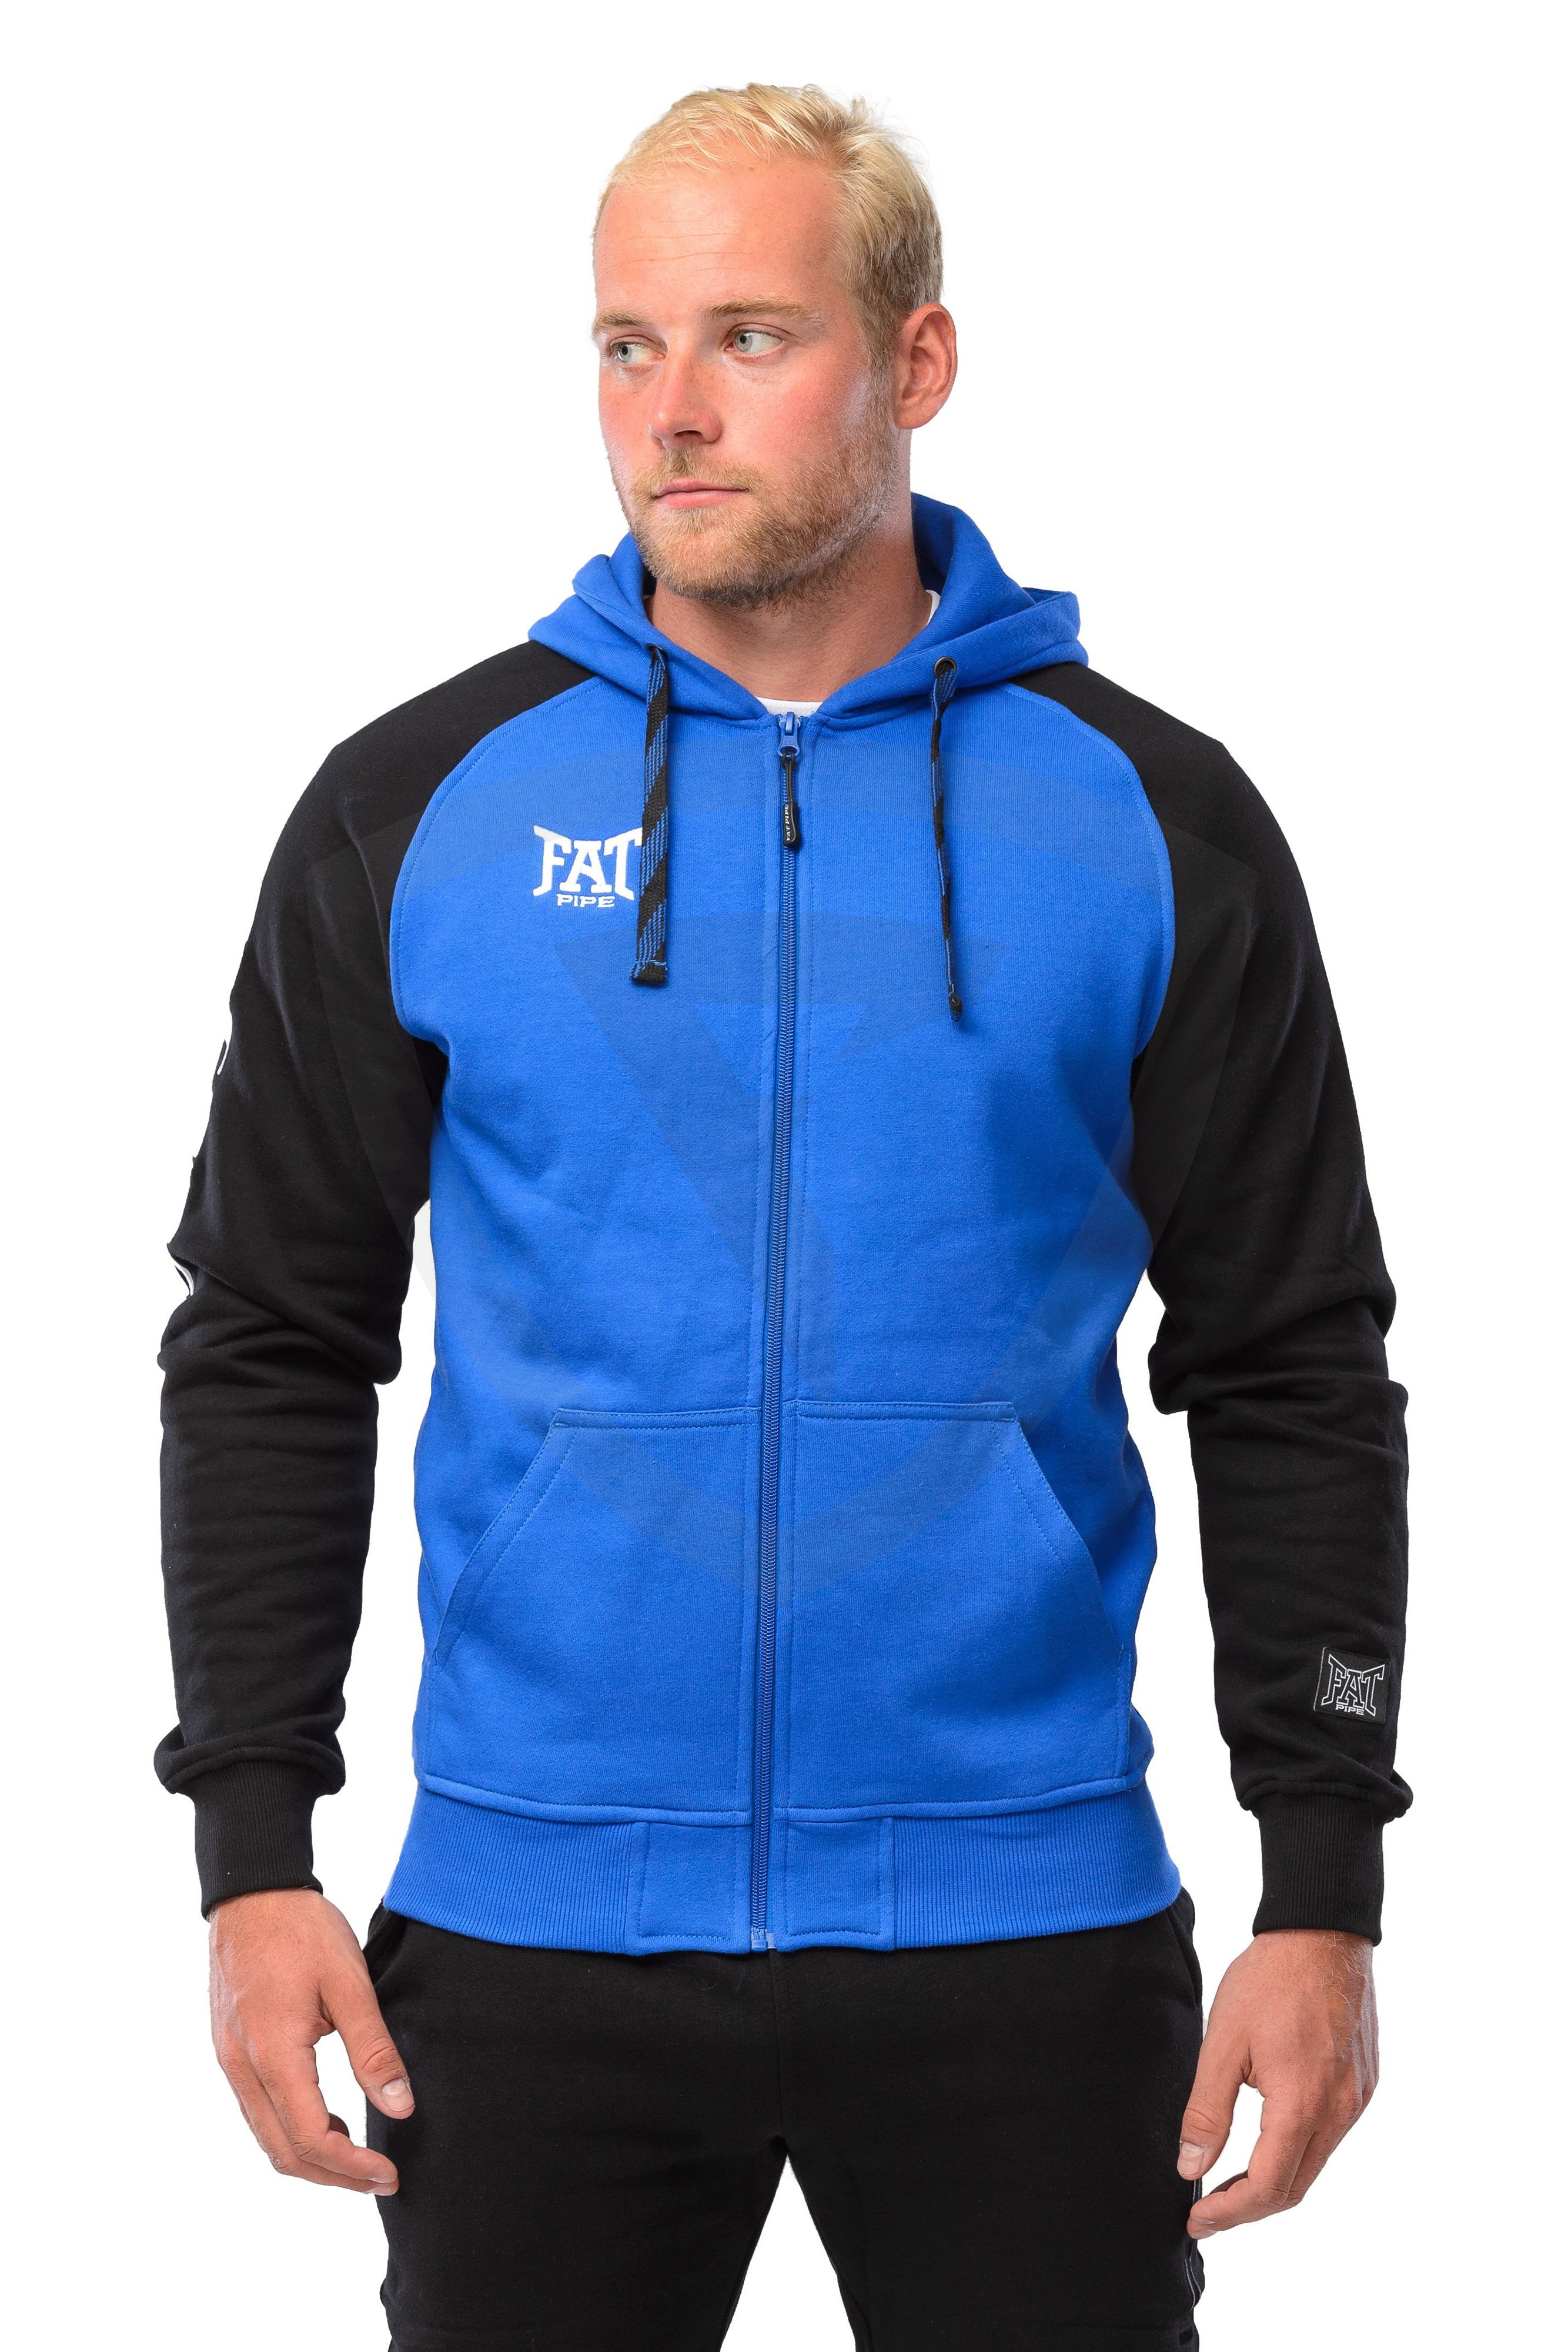 Fatpipe Strom Hooded Sweat Jacket XL modrá